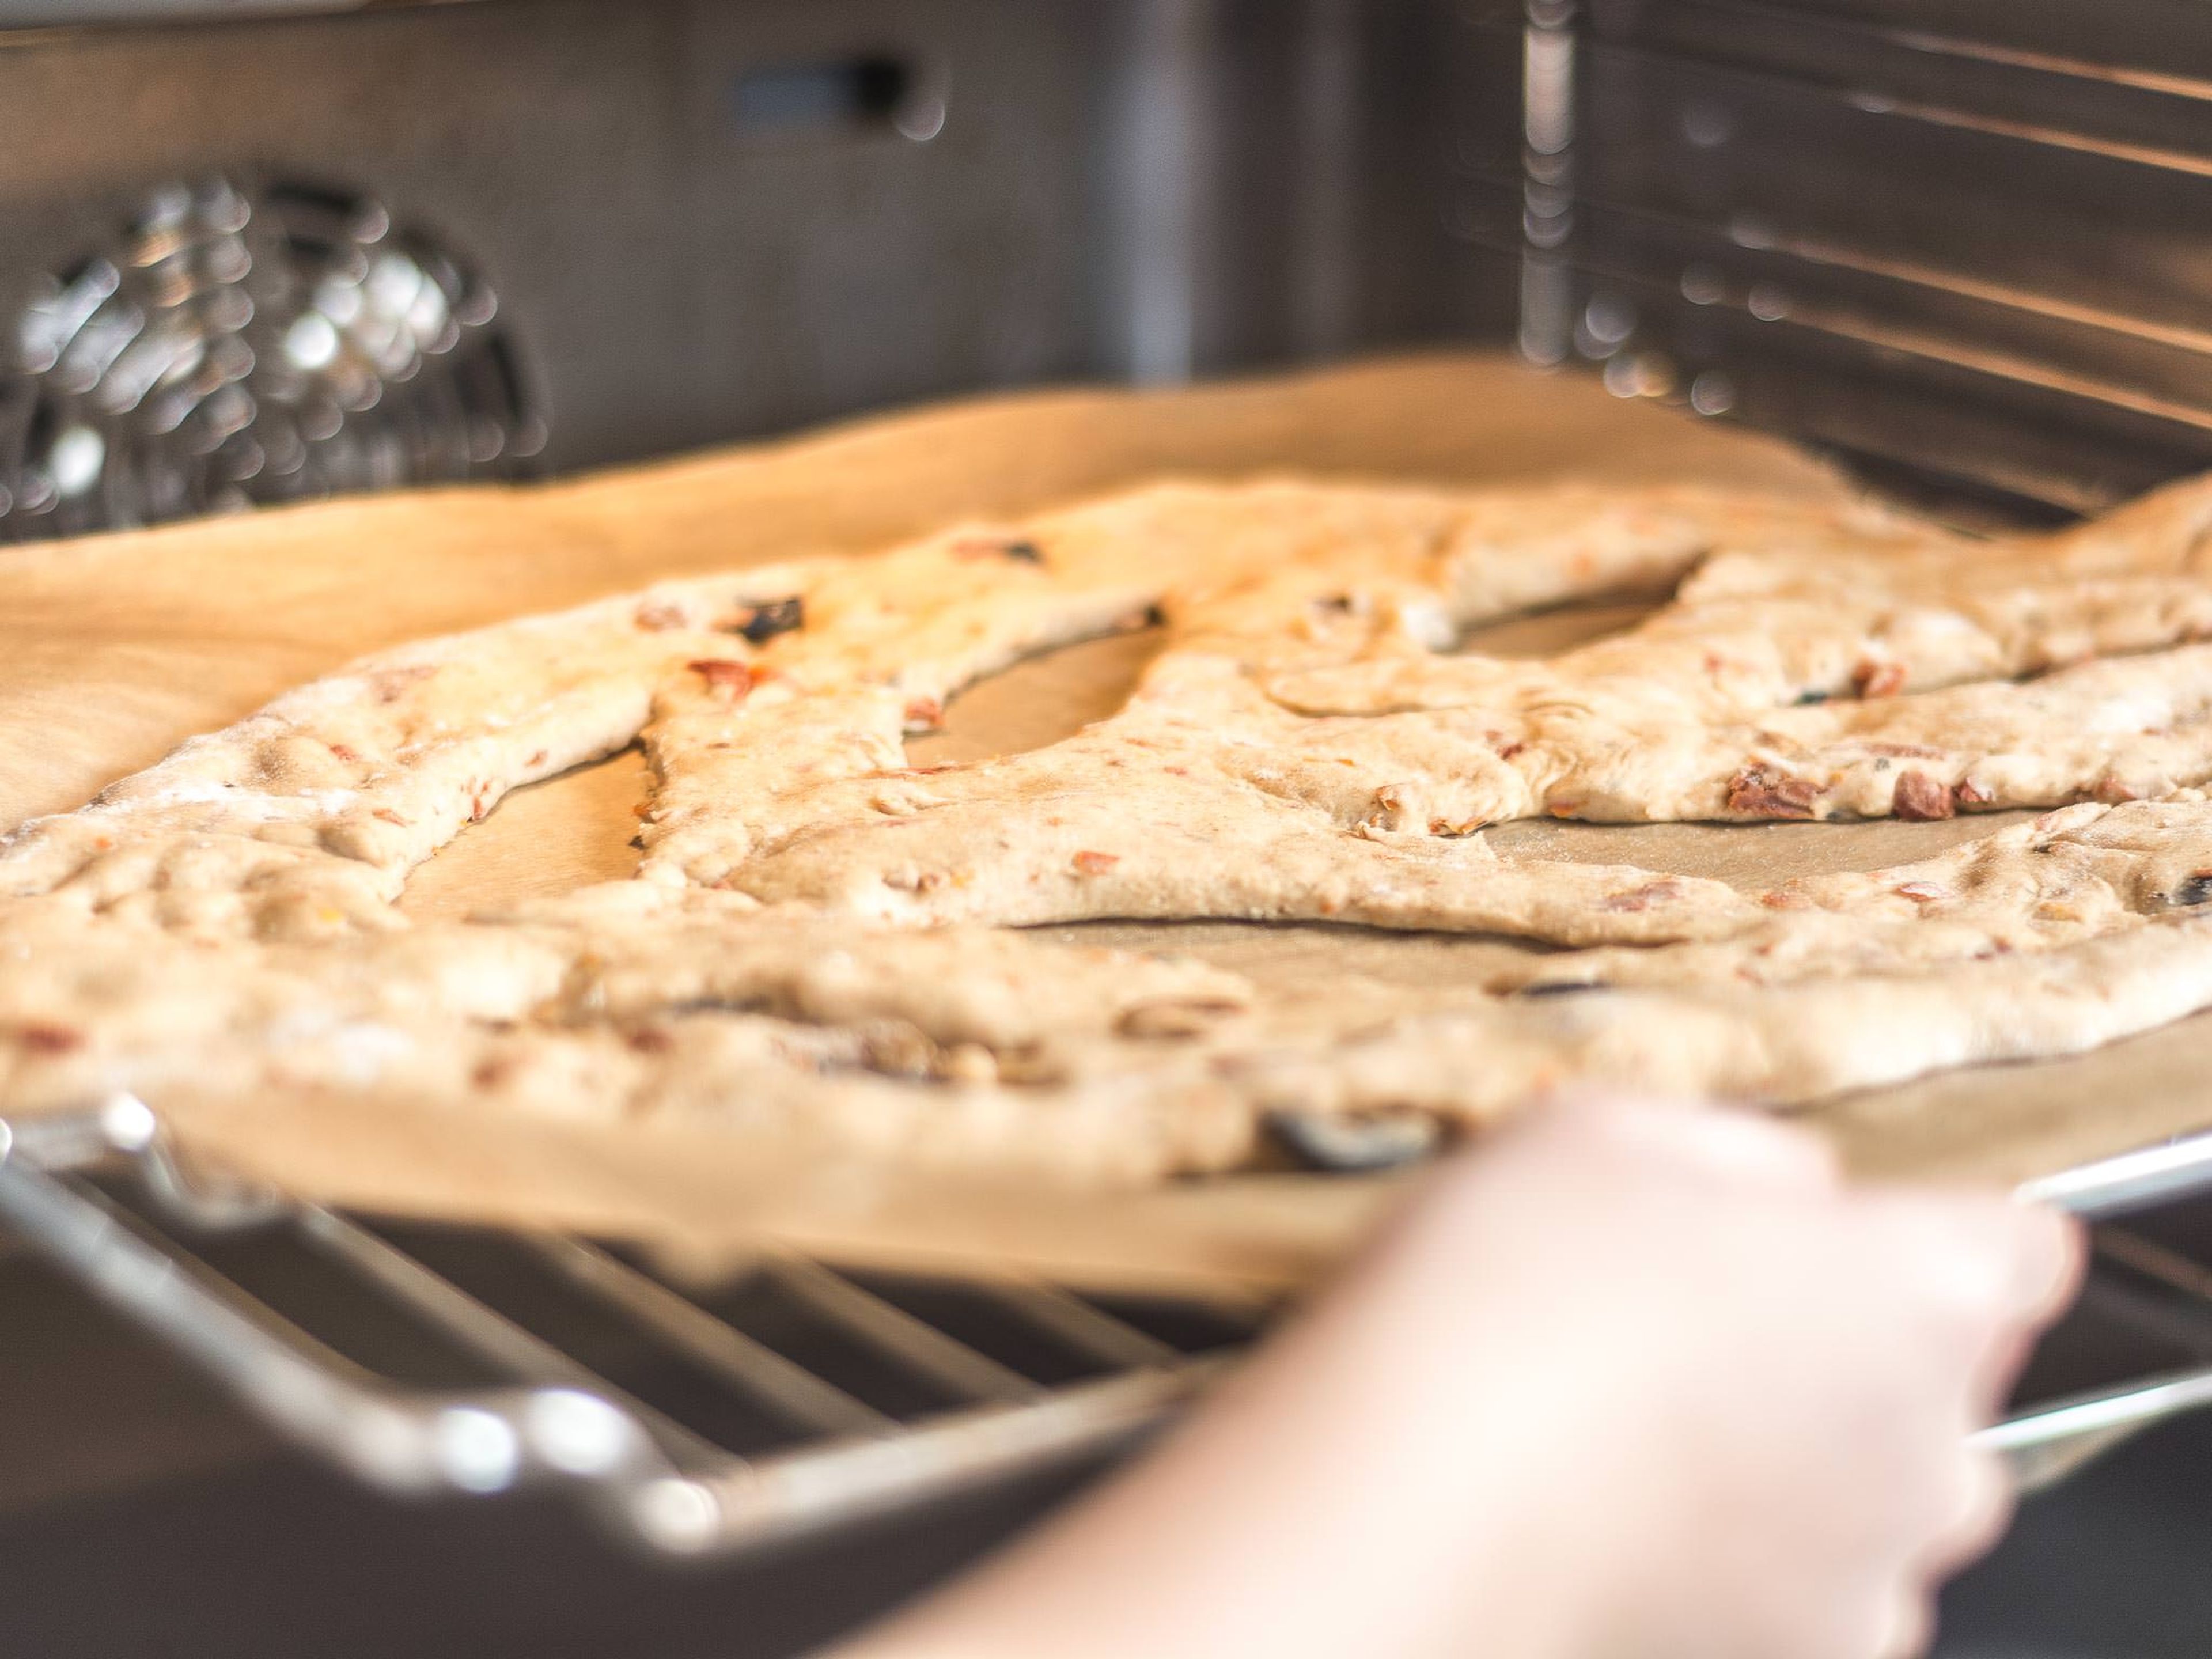 In der Zwischenzeit Backofen auf 220°C vorheizen. Anschließend die Fougasse im vorgeheizten Ofen ca. 20 – 25 Min. goldbraun backen. Warm mit Aioli oder anderen Dips nach Wahl servieren.